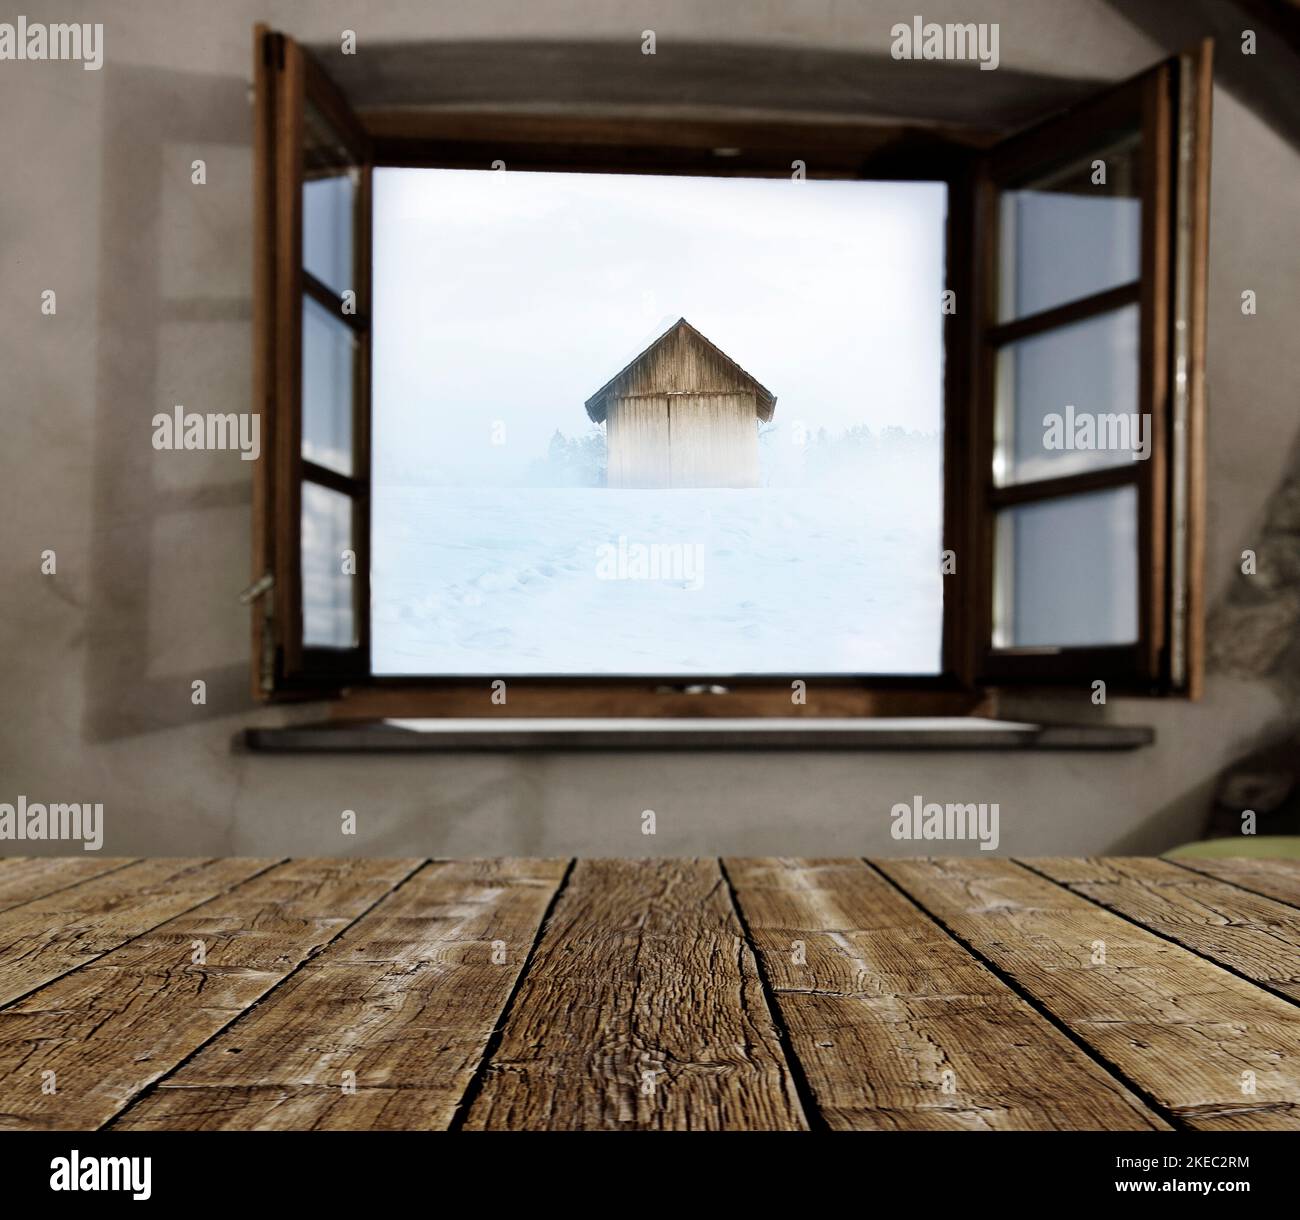 Vue par une fenêtre ouverte sur un paysage enneigé avec hangar en bois Banque D'Images